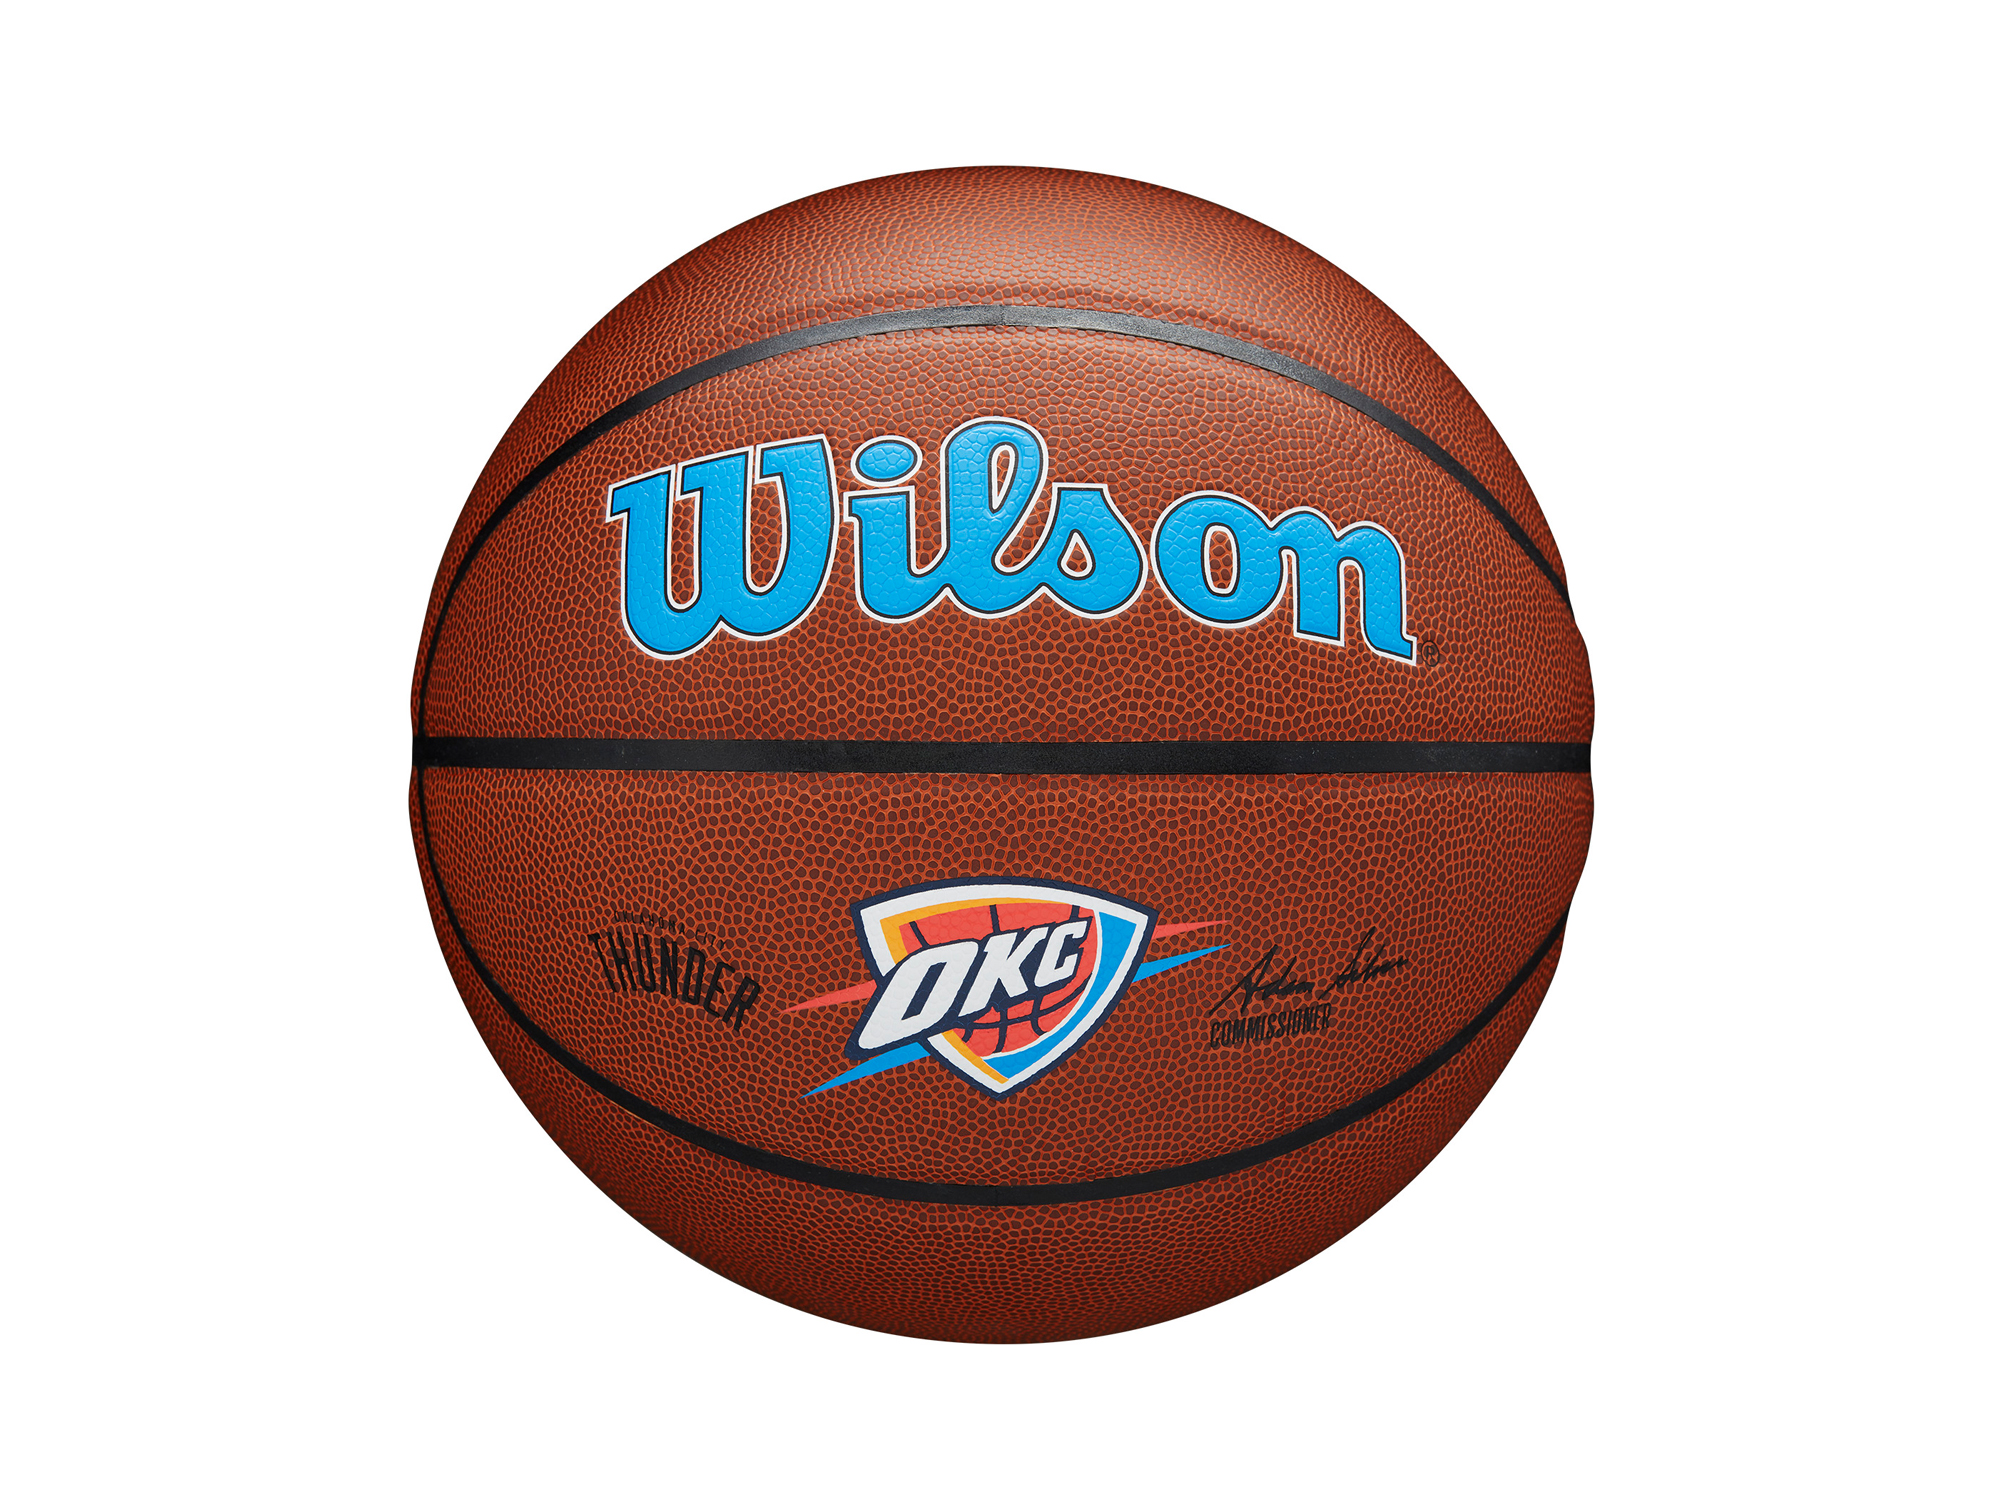 Wilson Oklahoma City Thunder NBA Team Alliance Basketball